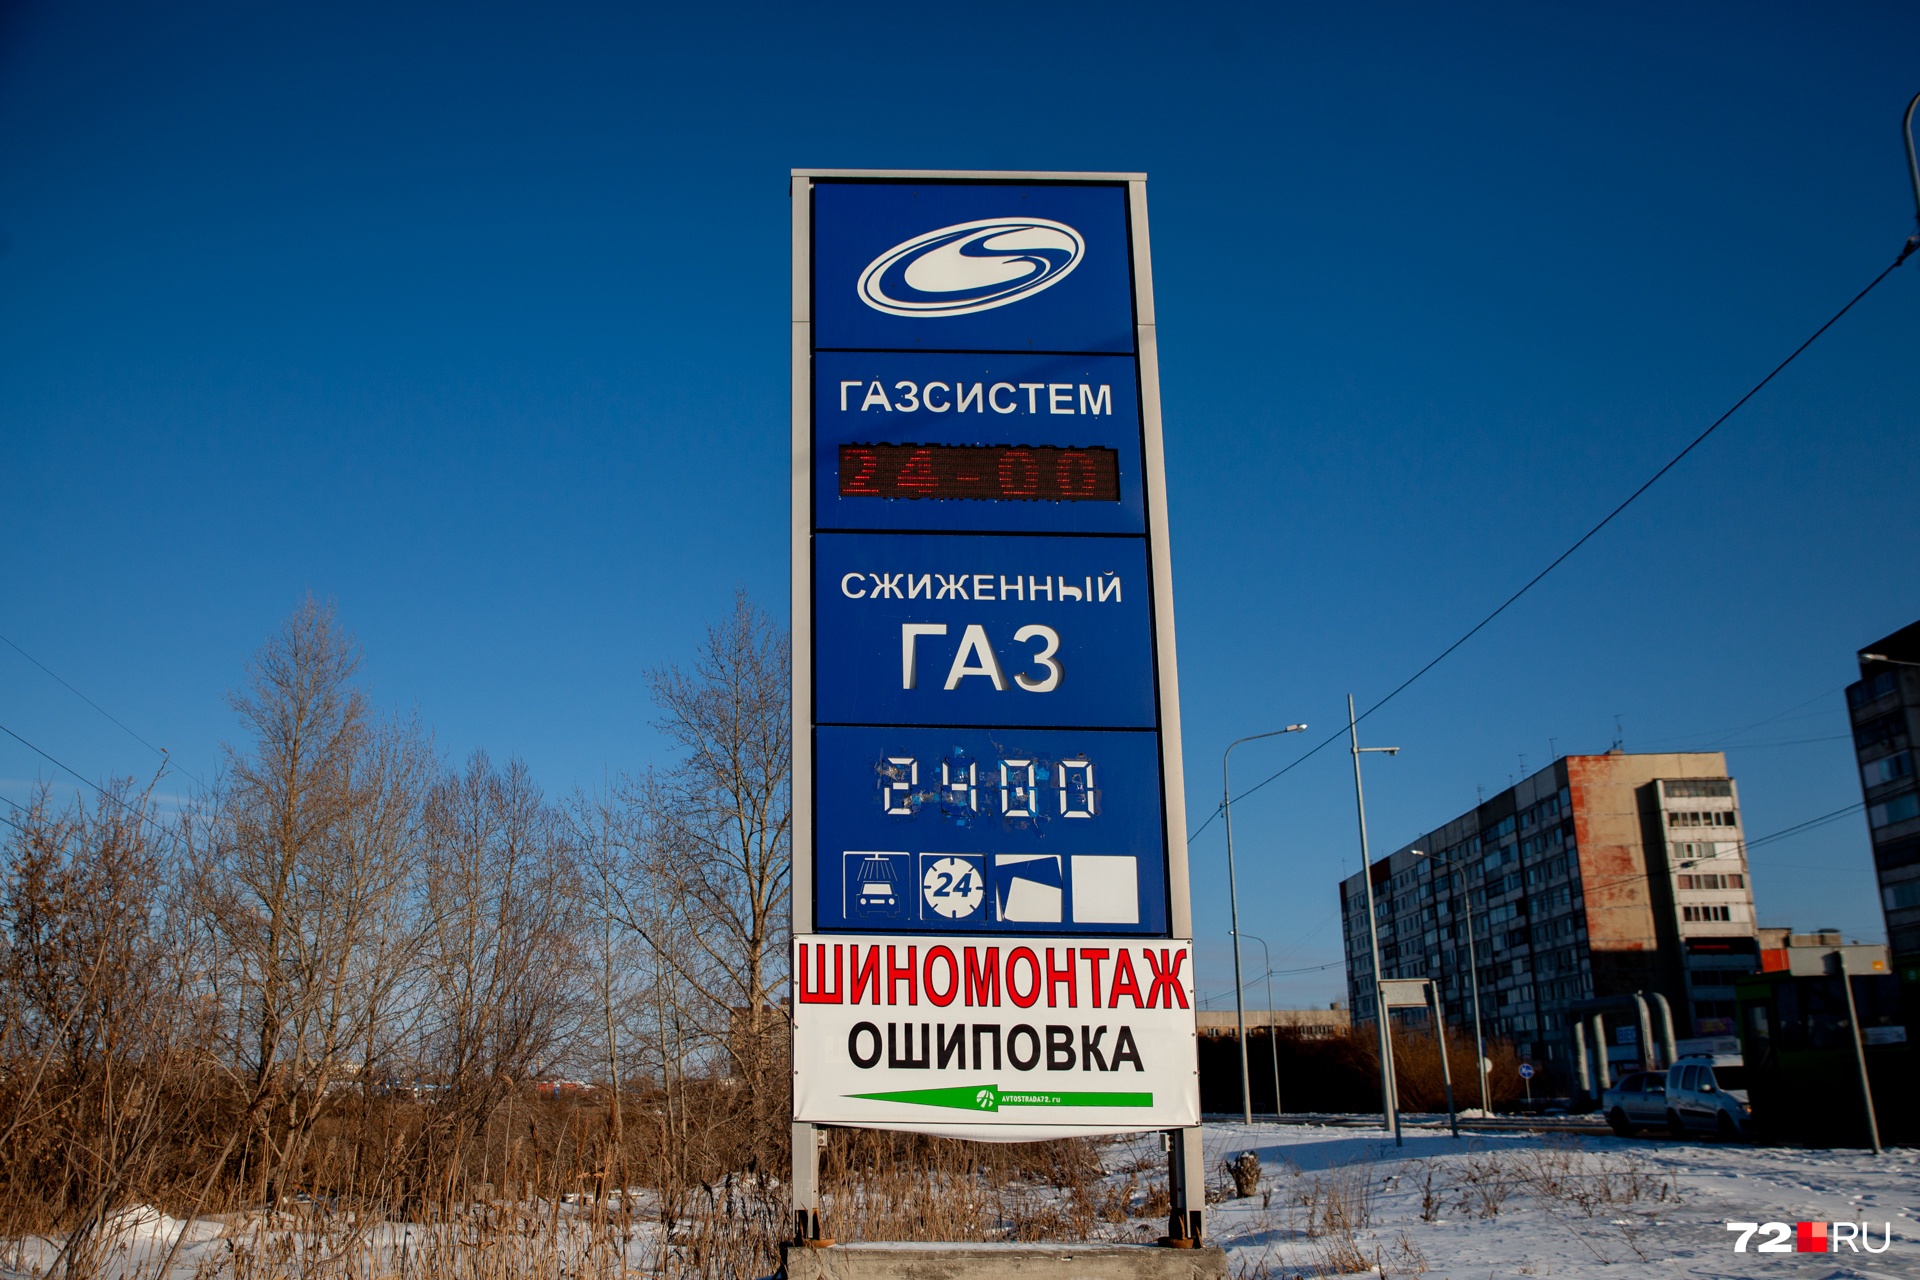 «Газсистем» предлагает газ за 24 рубля 80 копеек